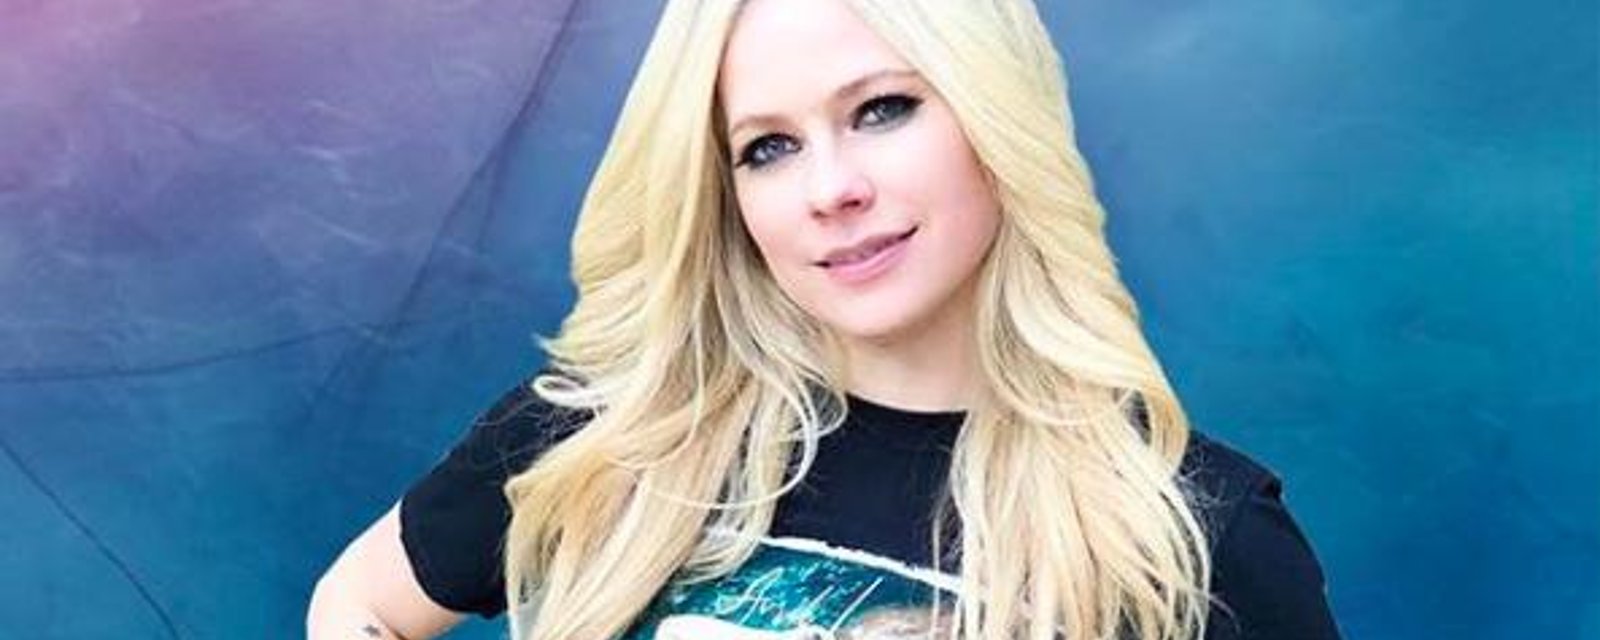 Avril Lavigne pose flambant nue sur la pochette de son nouvel album